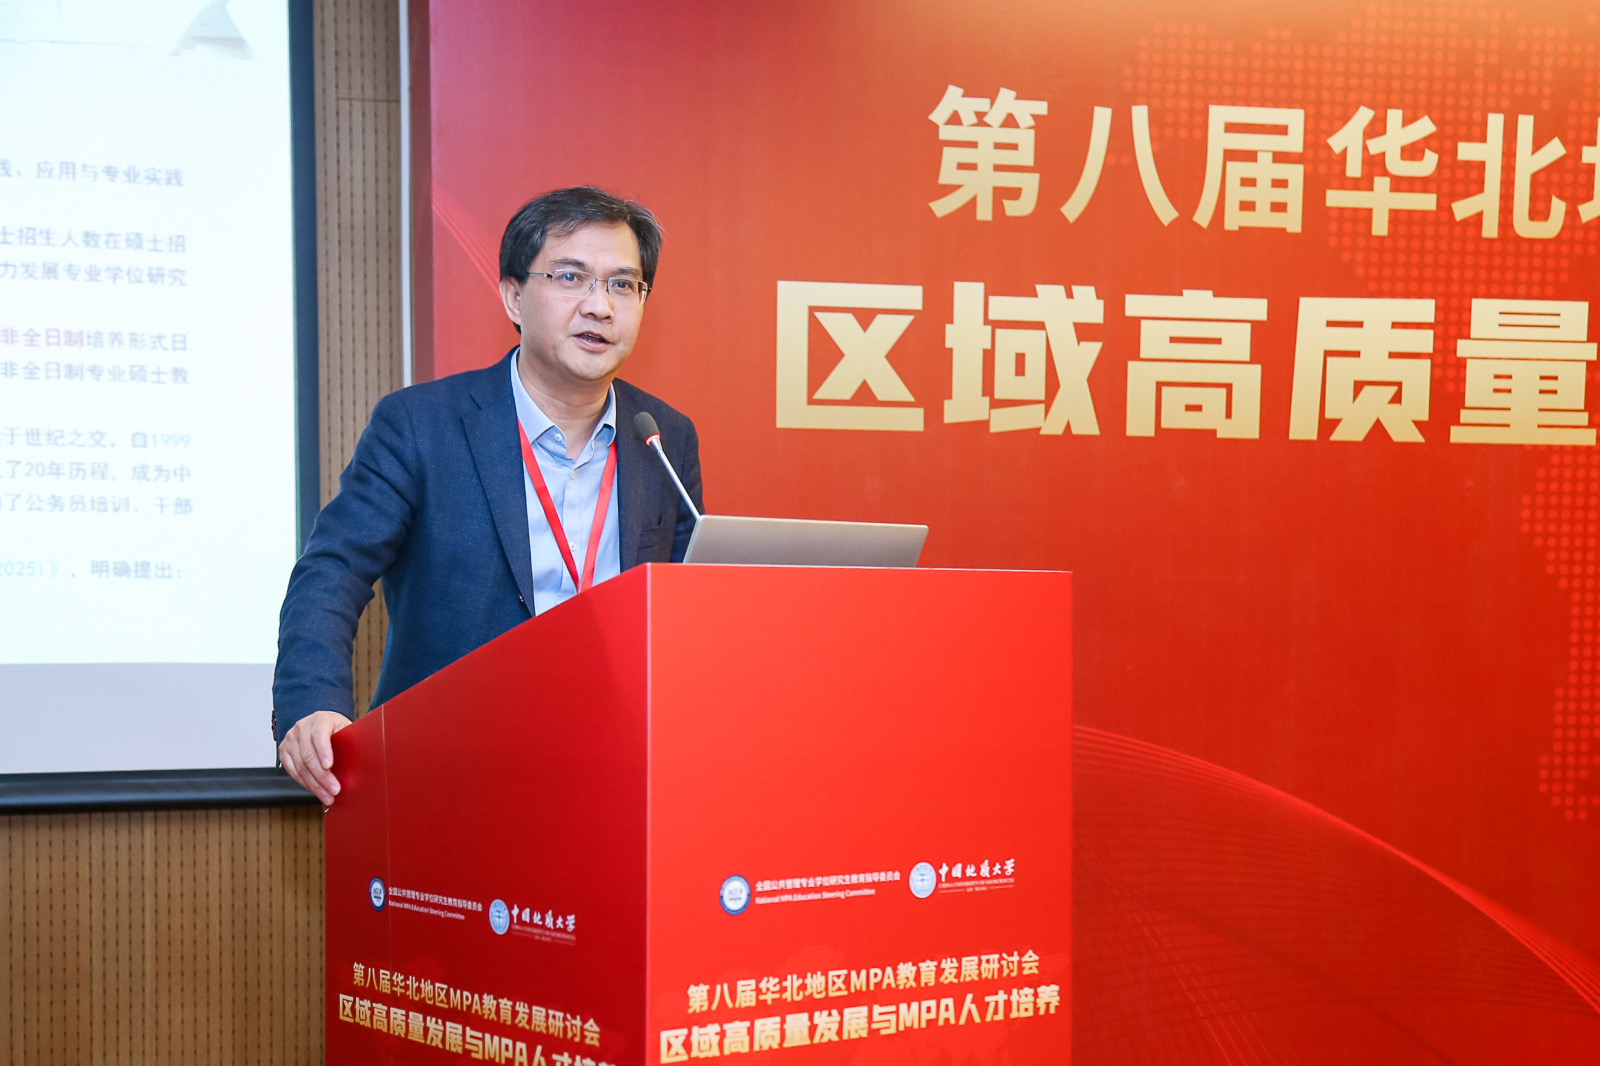 北京航空航天大学公共管理学院院长蔡劲松一行出席第八届华北地区MPA教育发展研讨会